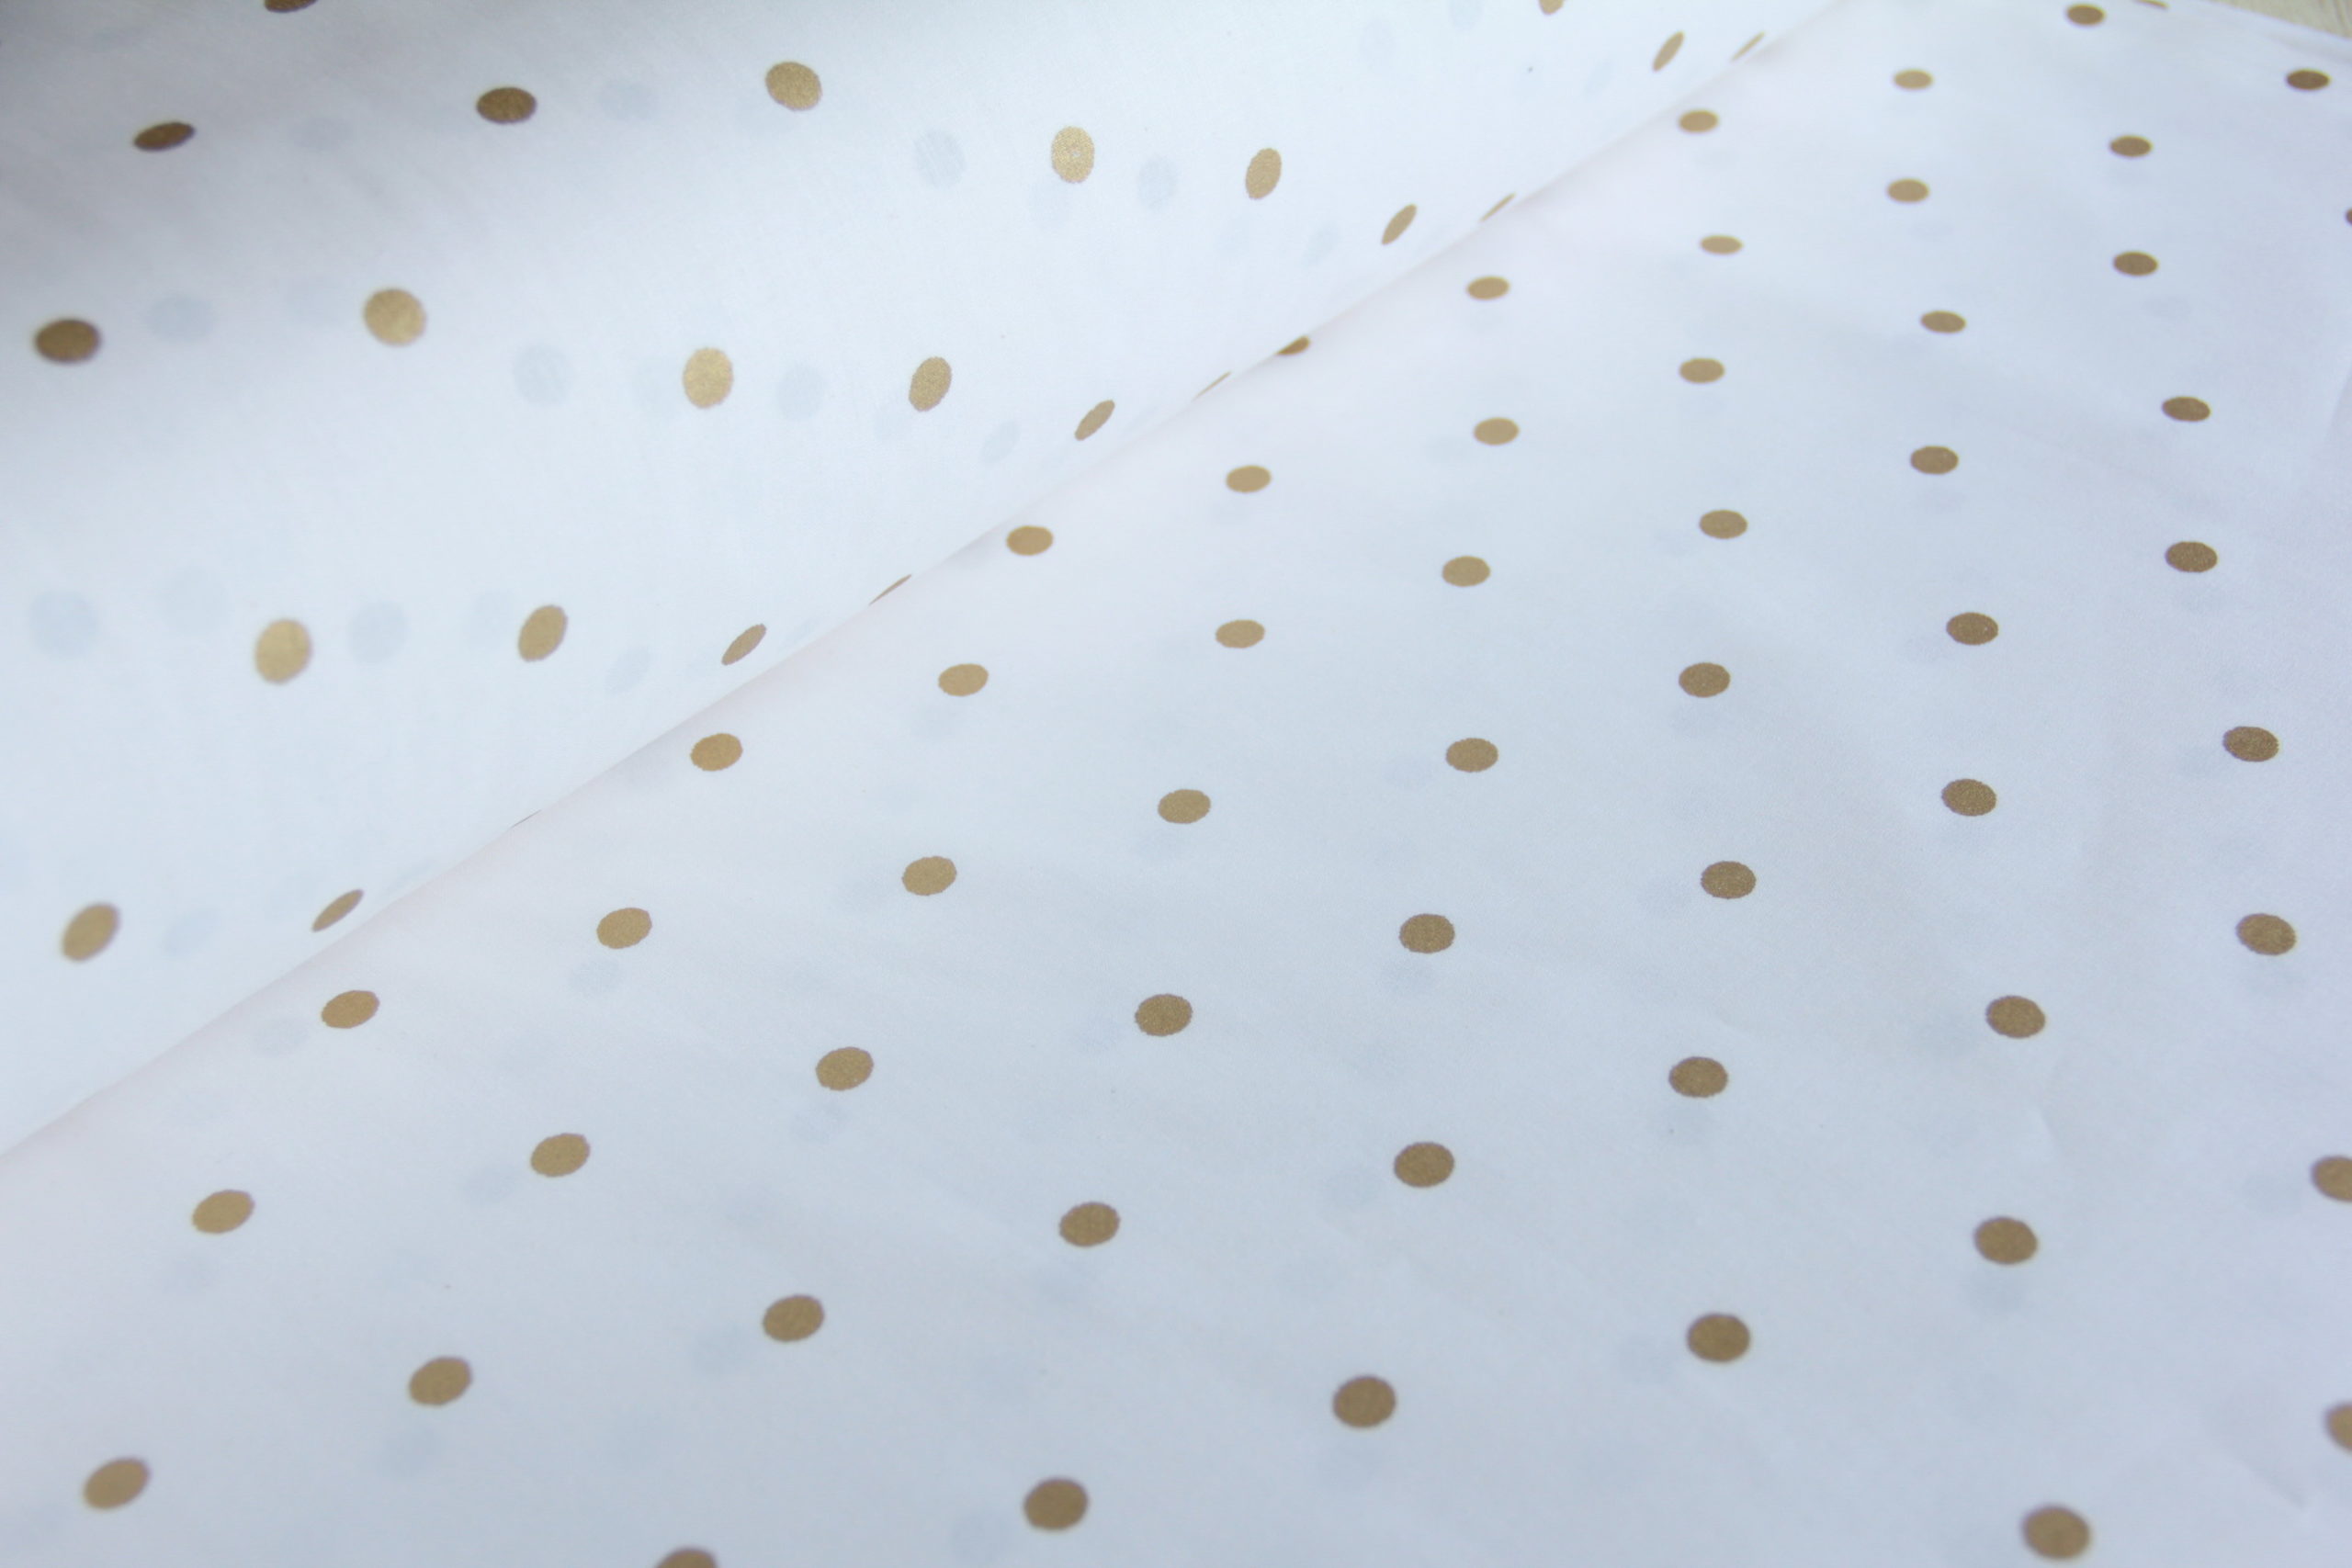 Ткань Ранфорс с глиттером Горох золото, Турция, ширина 240 см